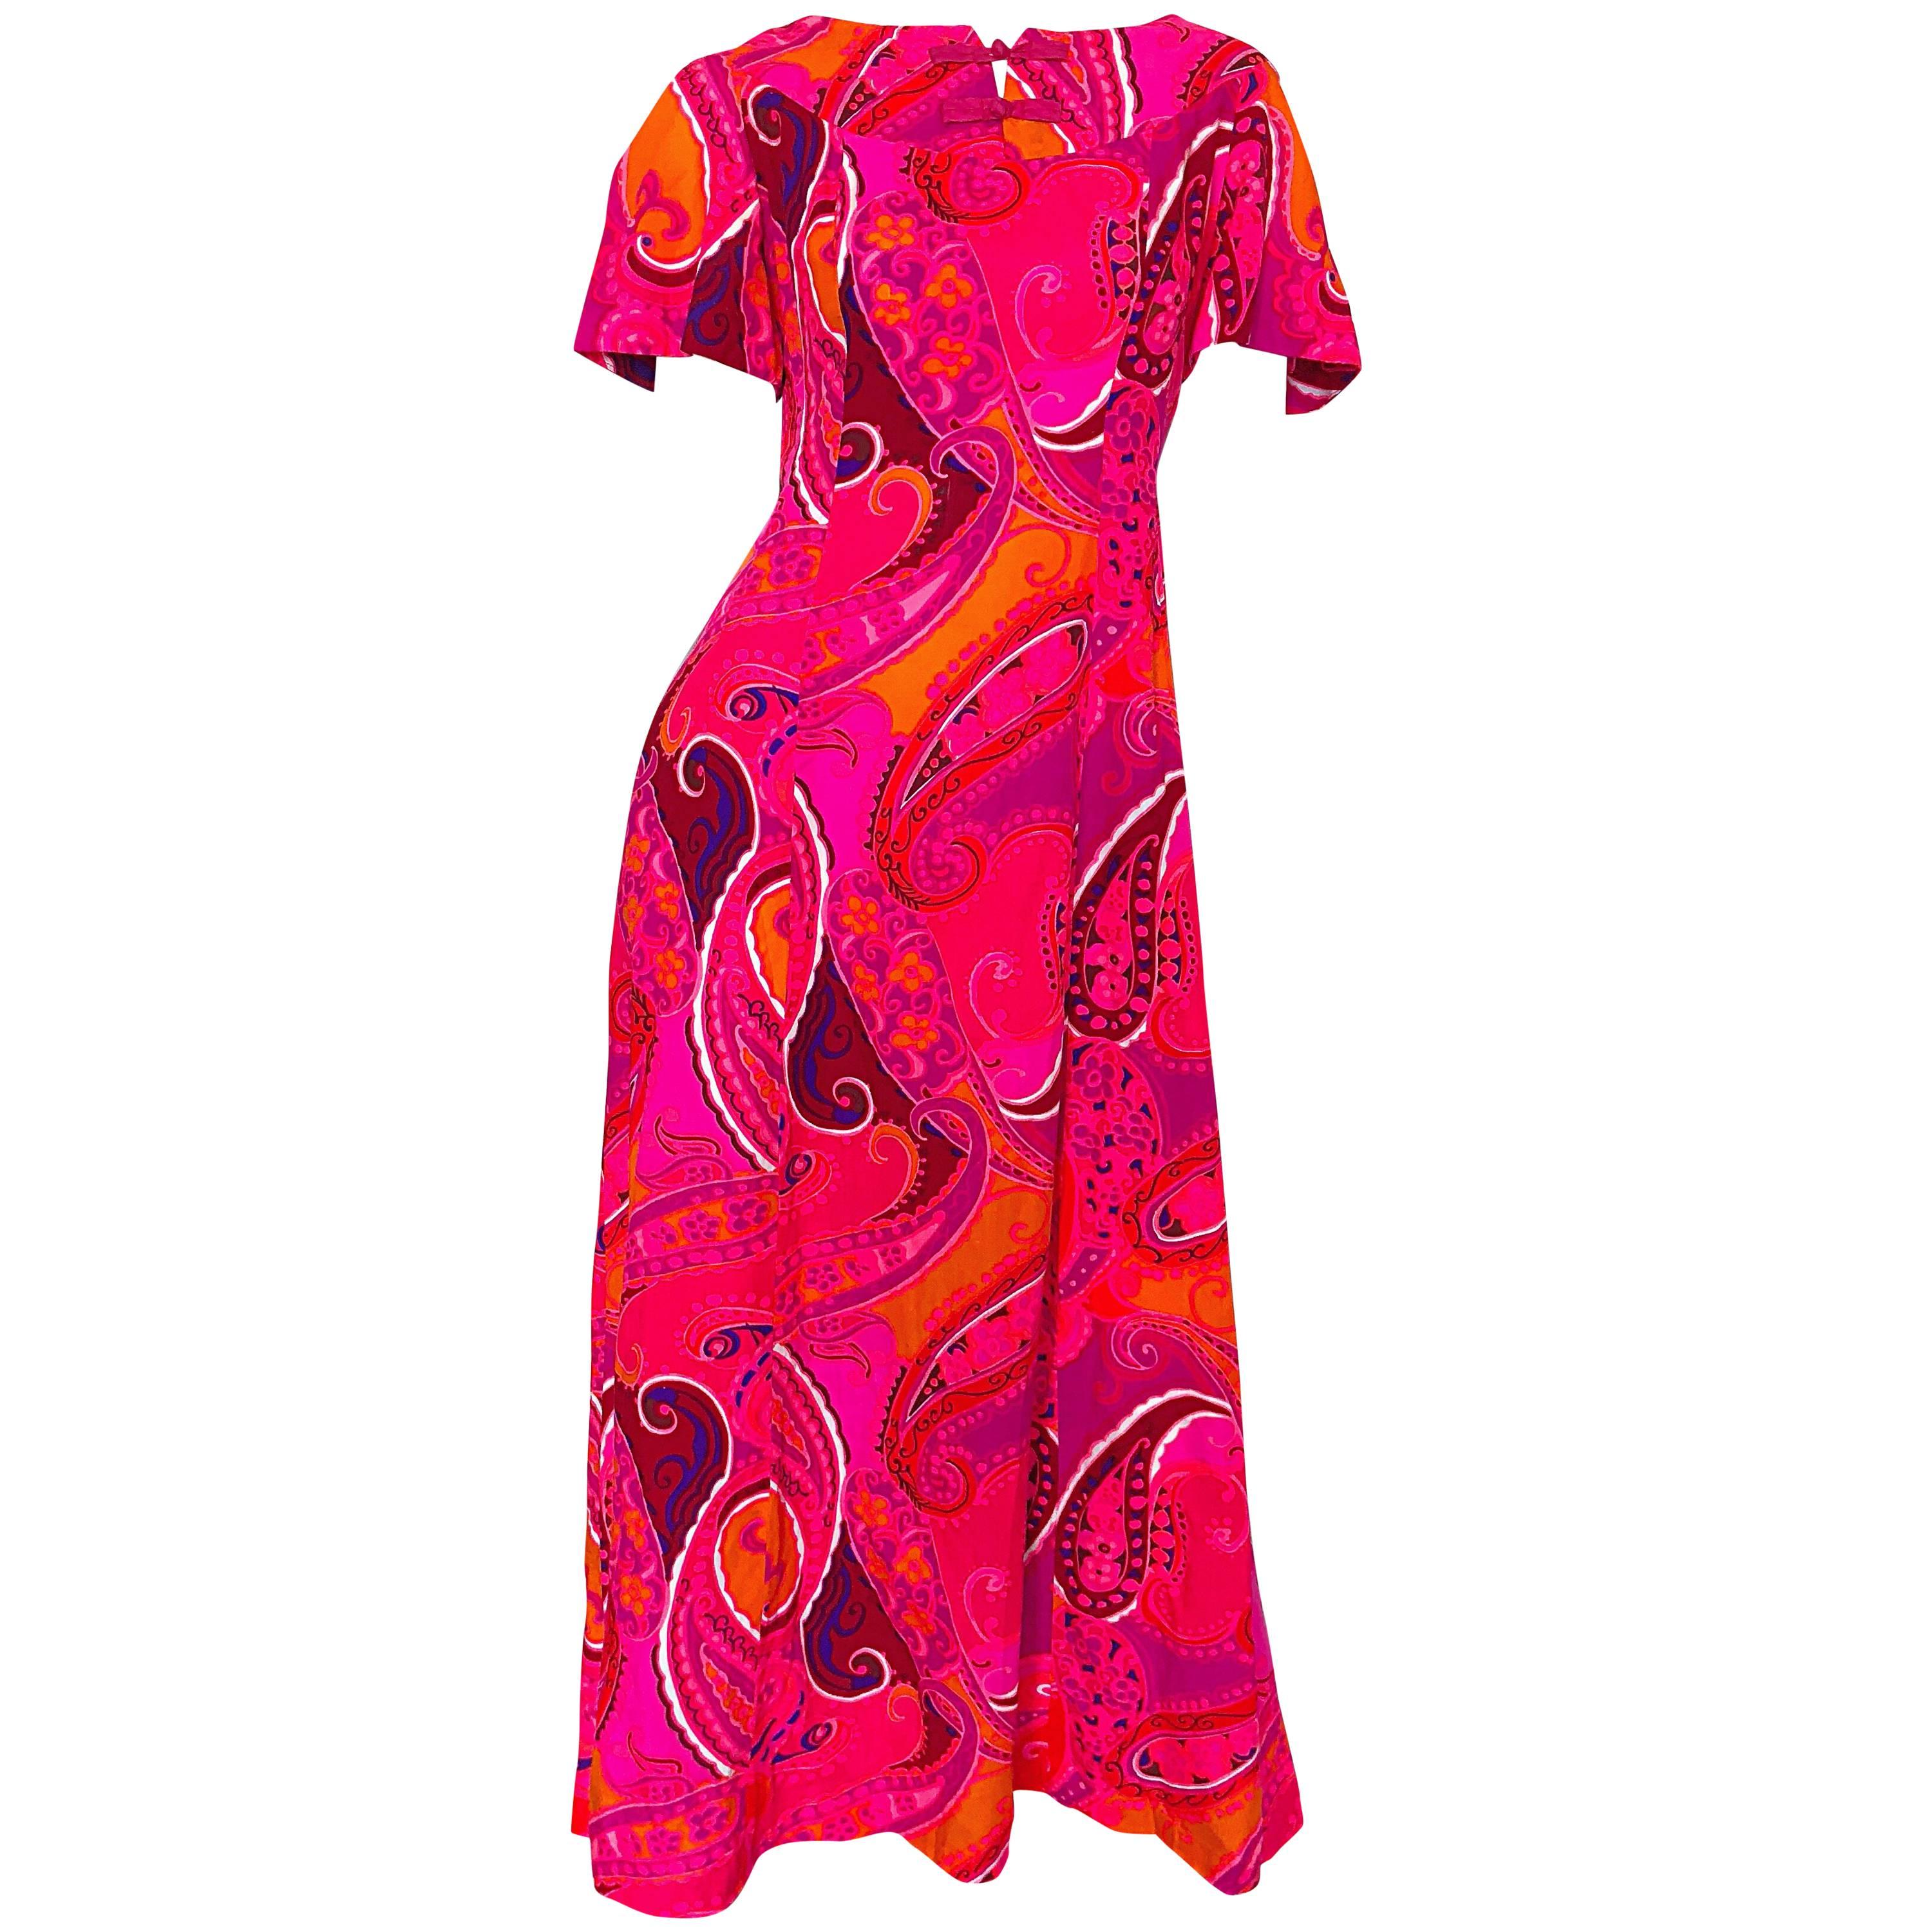 Kamehameha - Robe longue vintage à manches courtes et imprimé cachemire rose vif et orange, années 1960